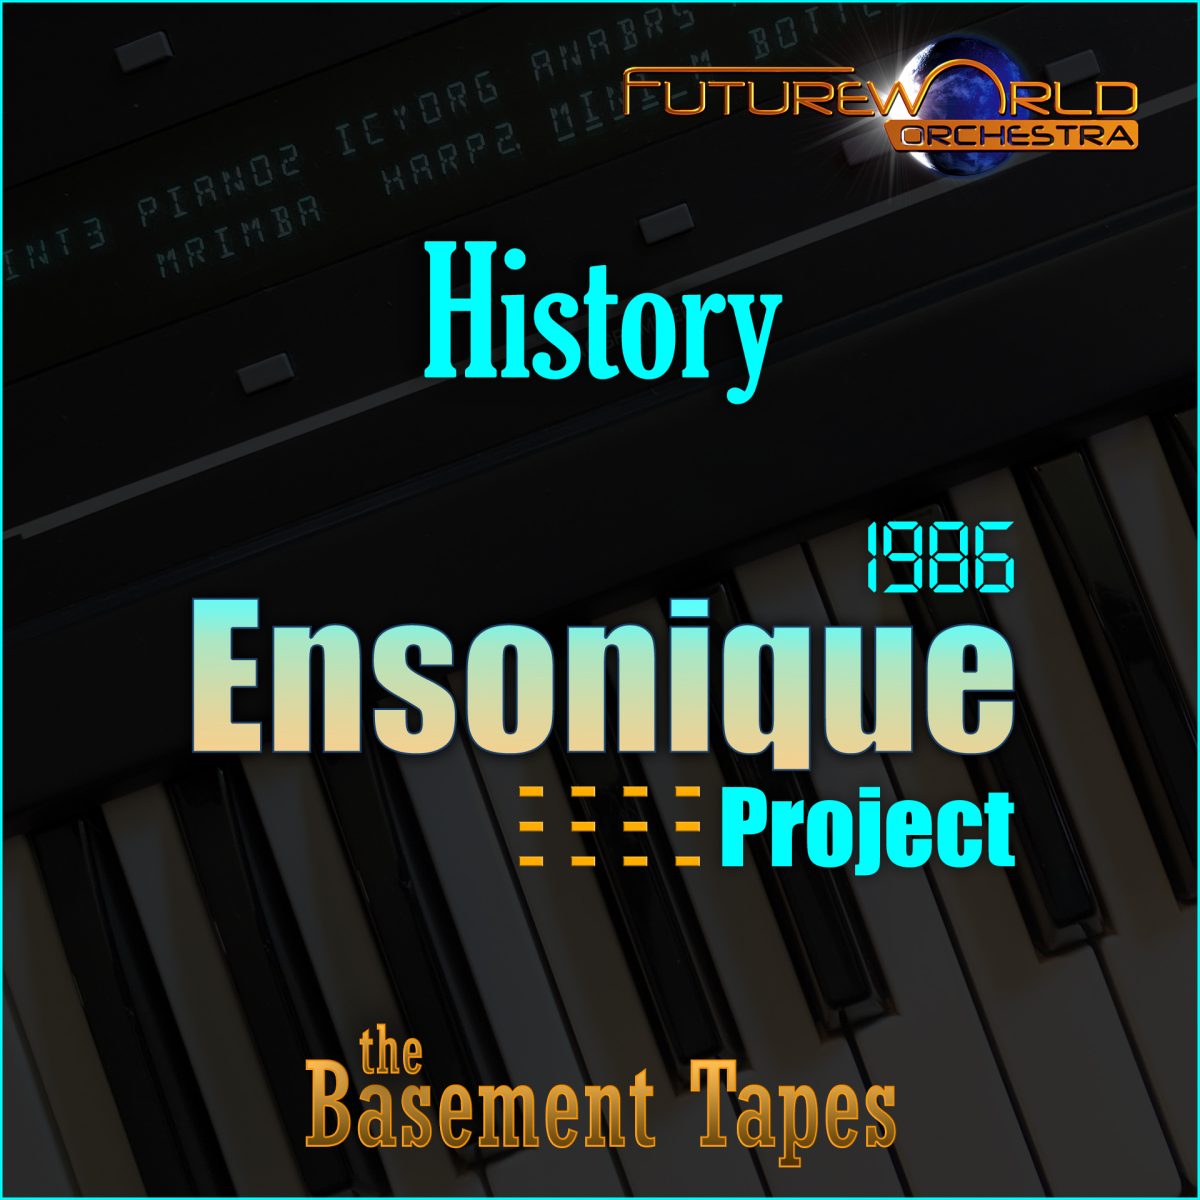 Ensonique - Playlist Image - History